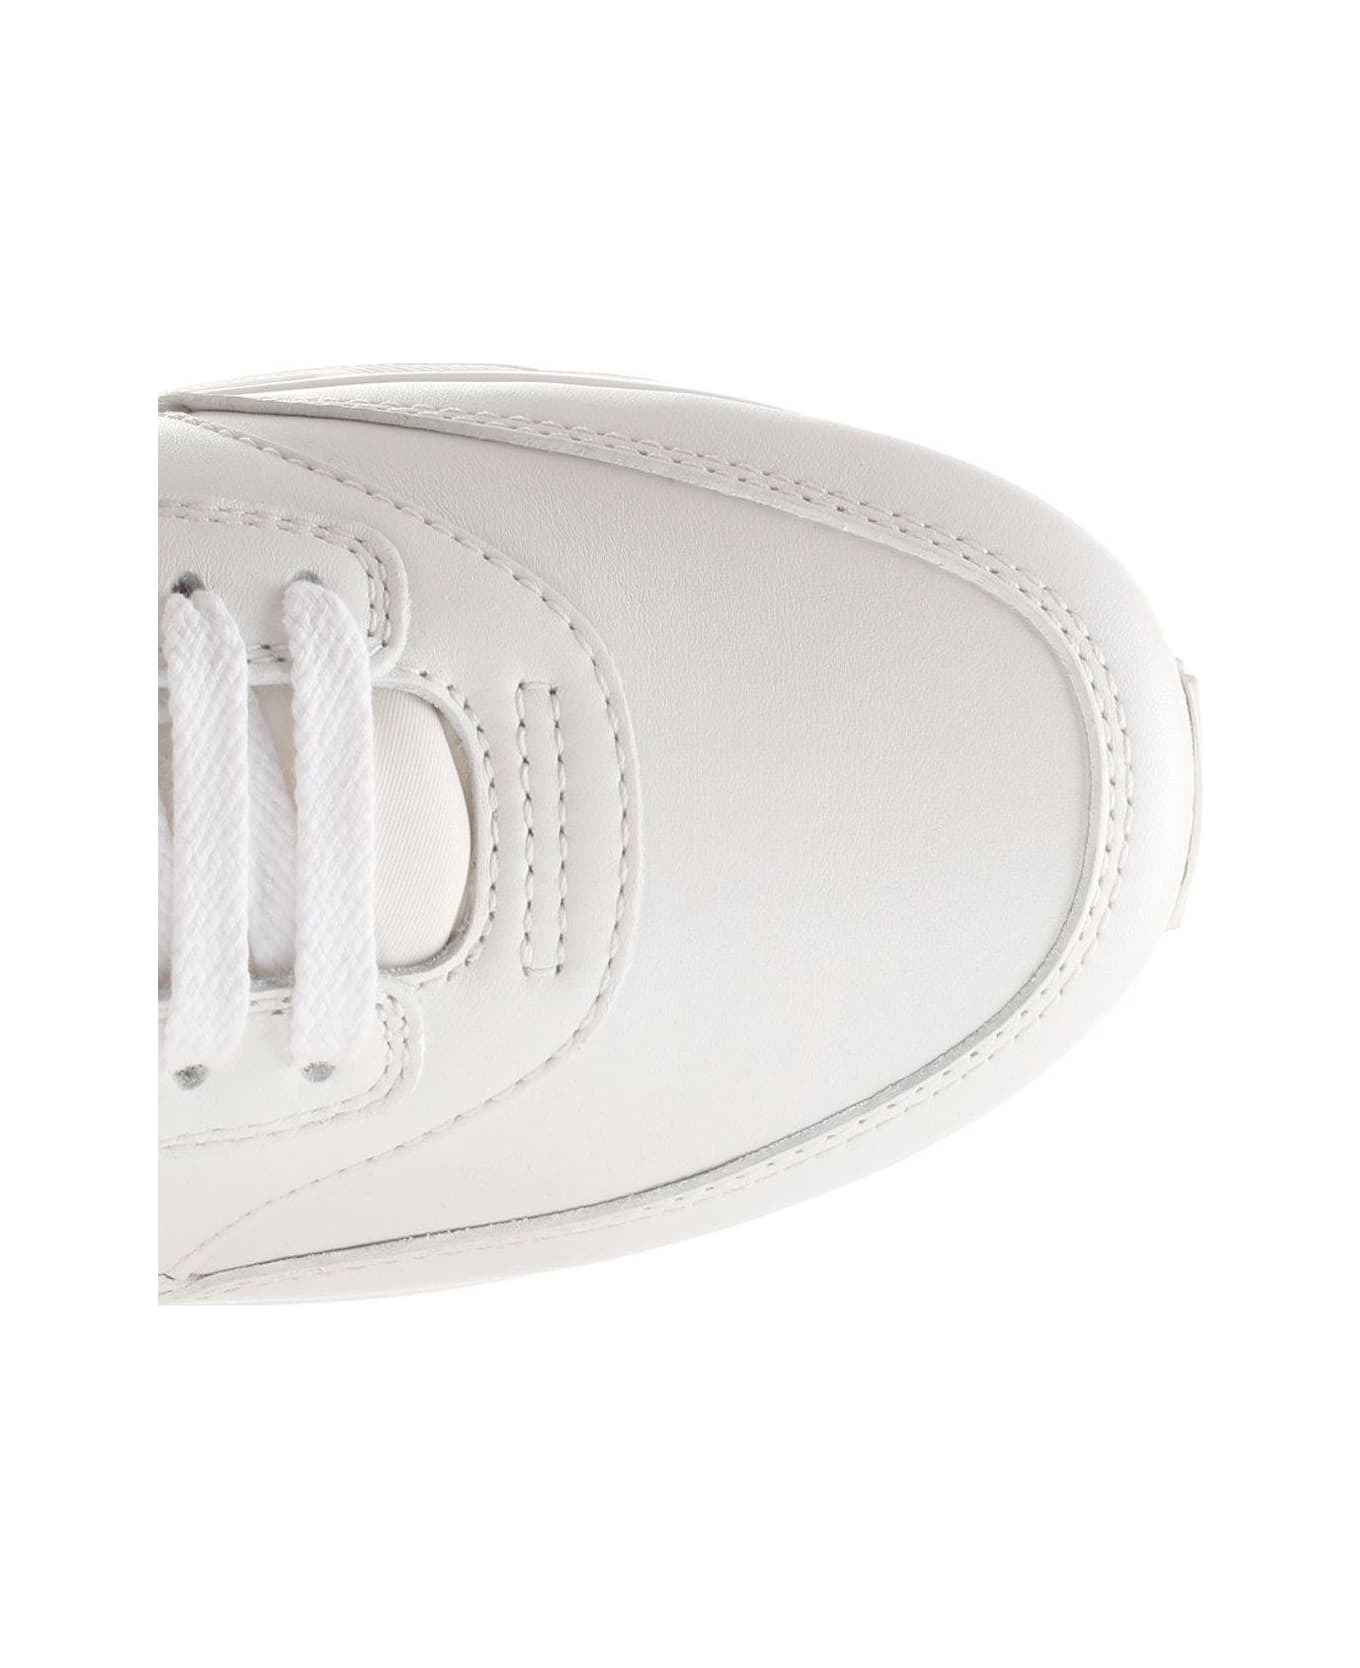 Saint Laurent Bump Lace-up Sneakers - White